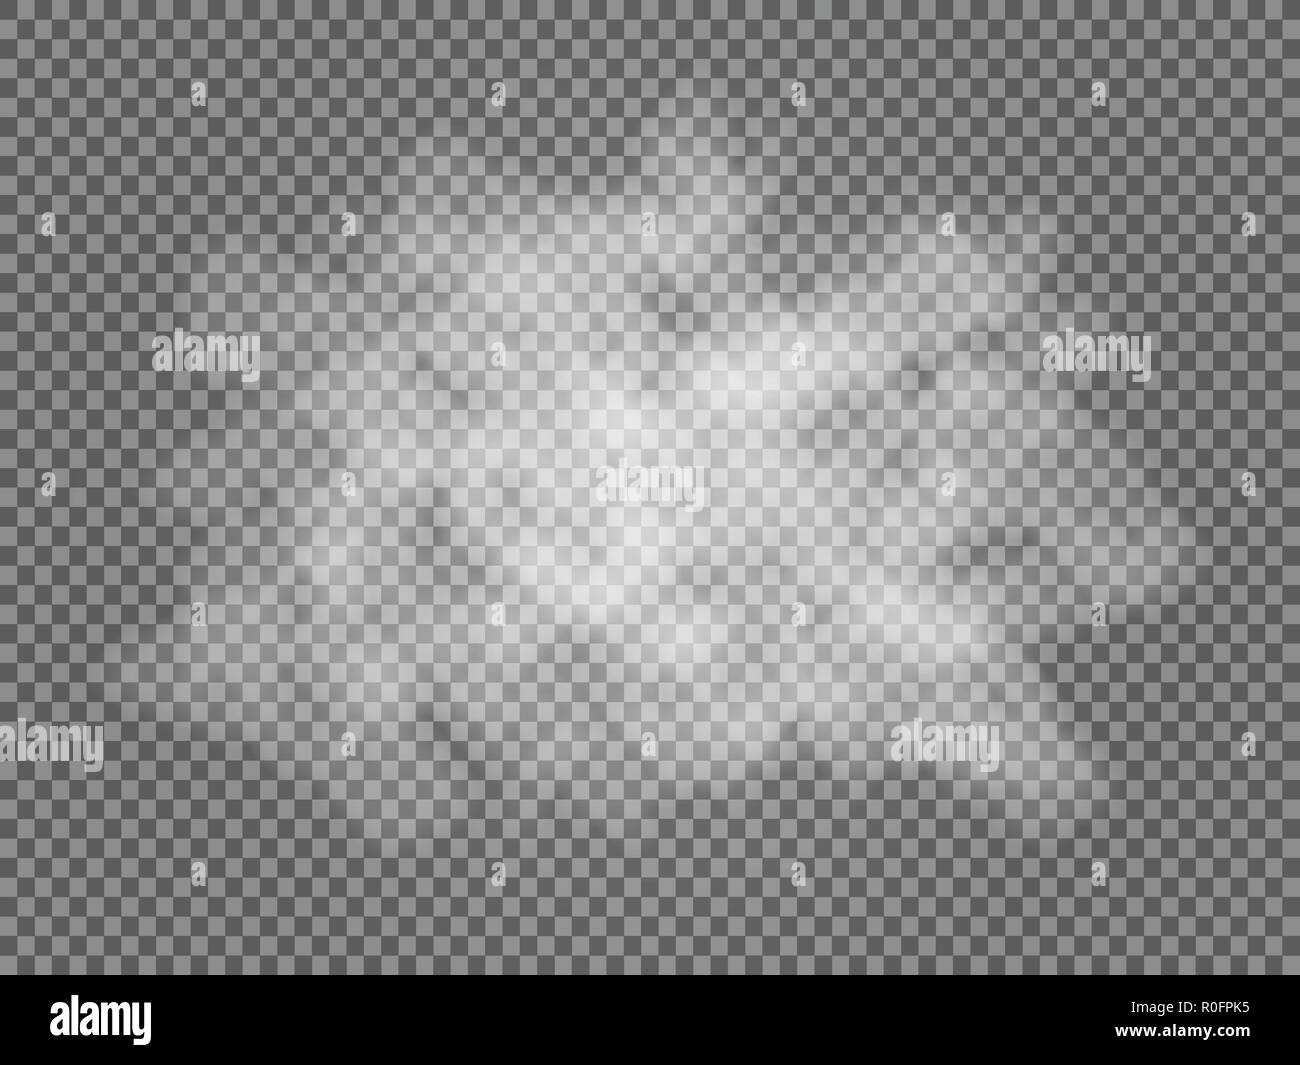 Nebel oder Rauch isolierte transparente Spezialeffekt. Weiße Vektor Bewölkung, Nebel oder Smog Hintergrund. Vektor-illustration Stock Vektor